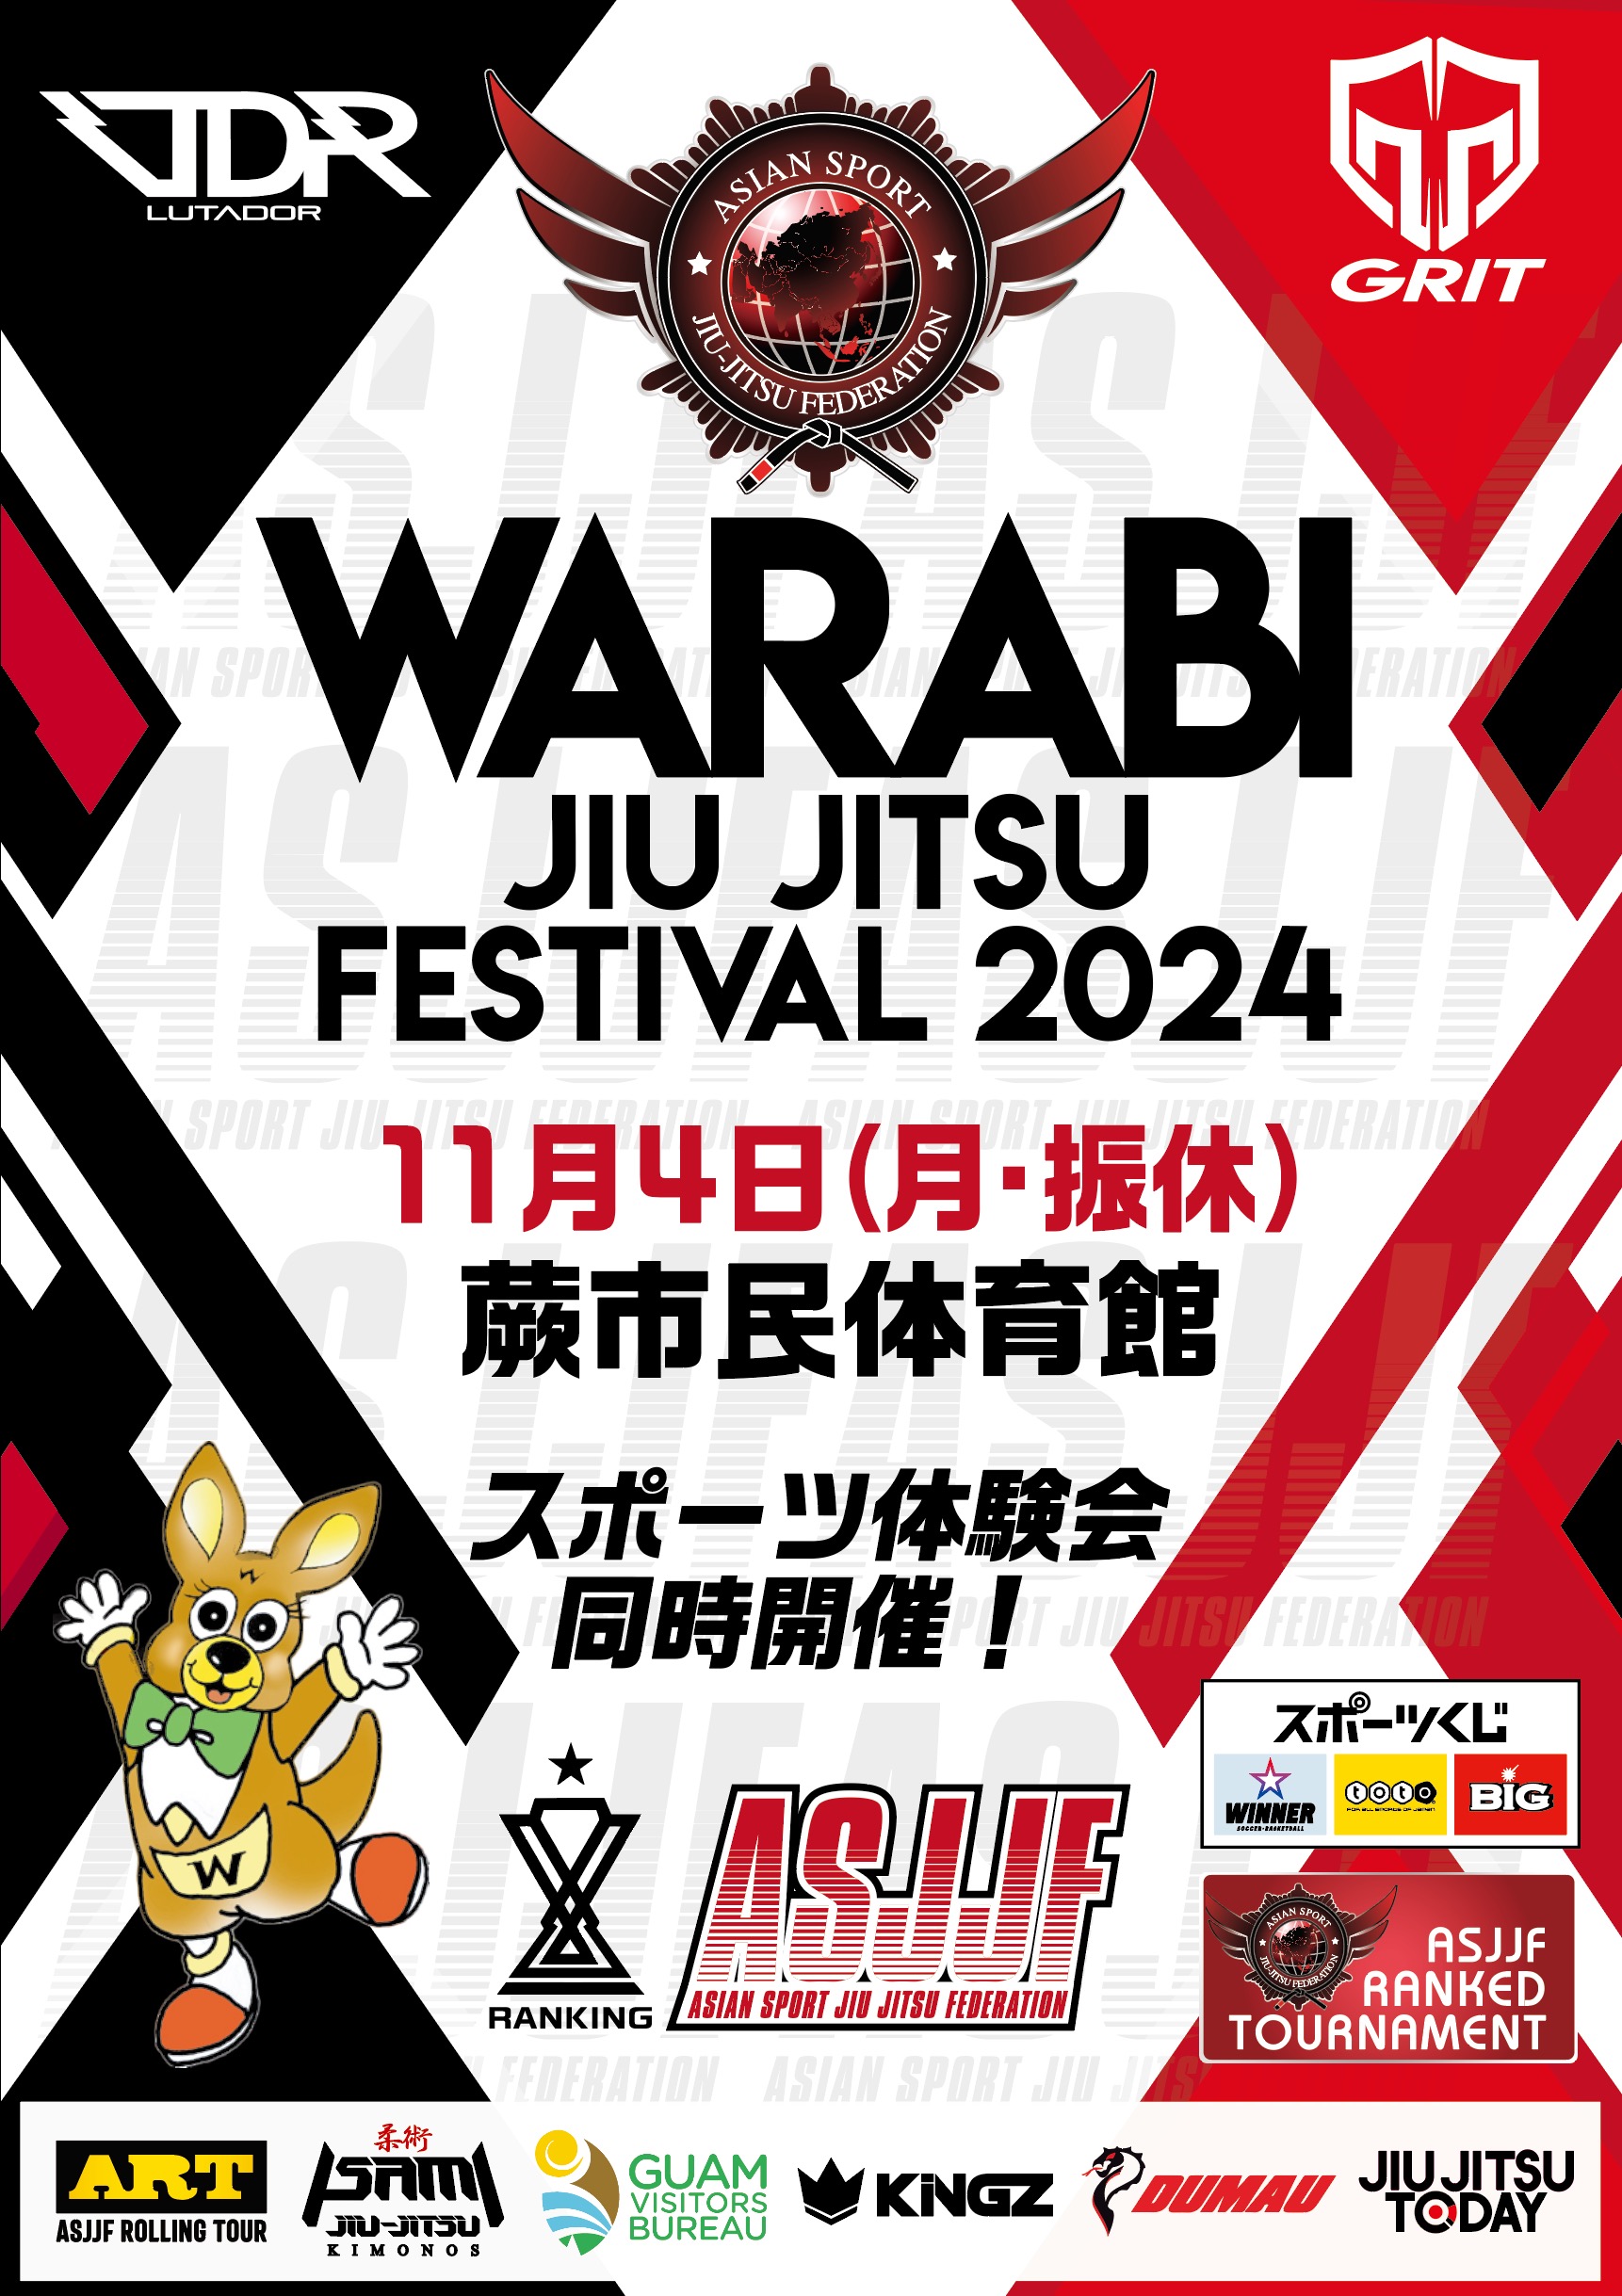 warabi jiu jitsu festival 2024